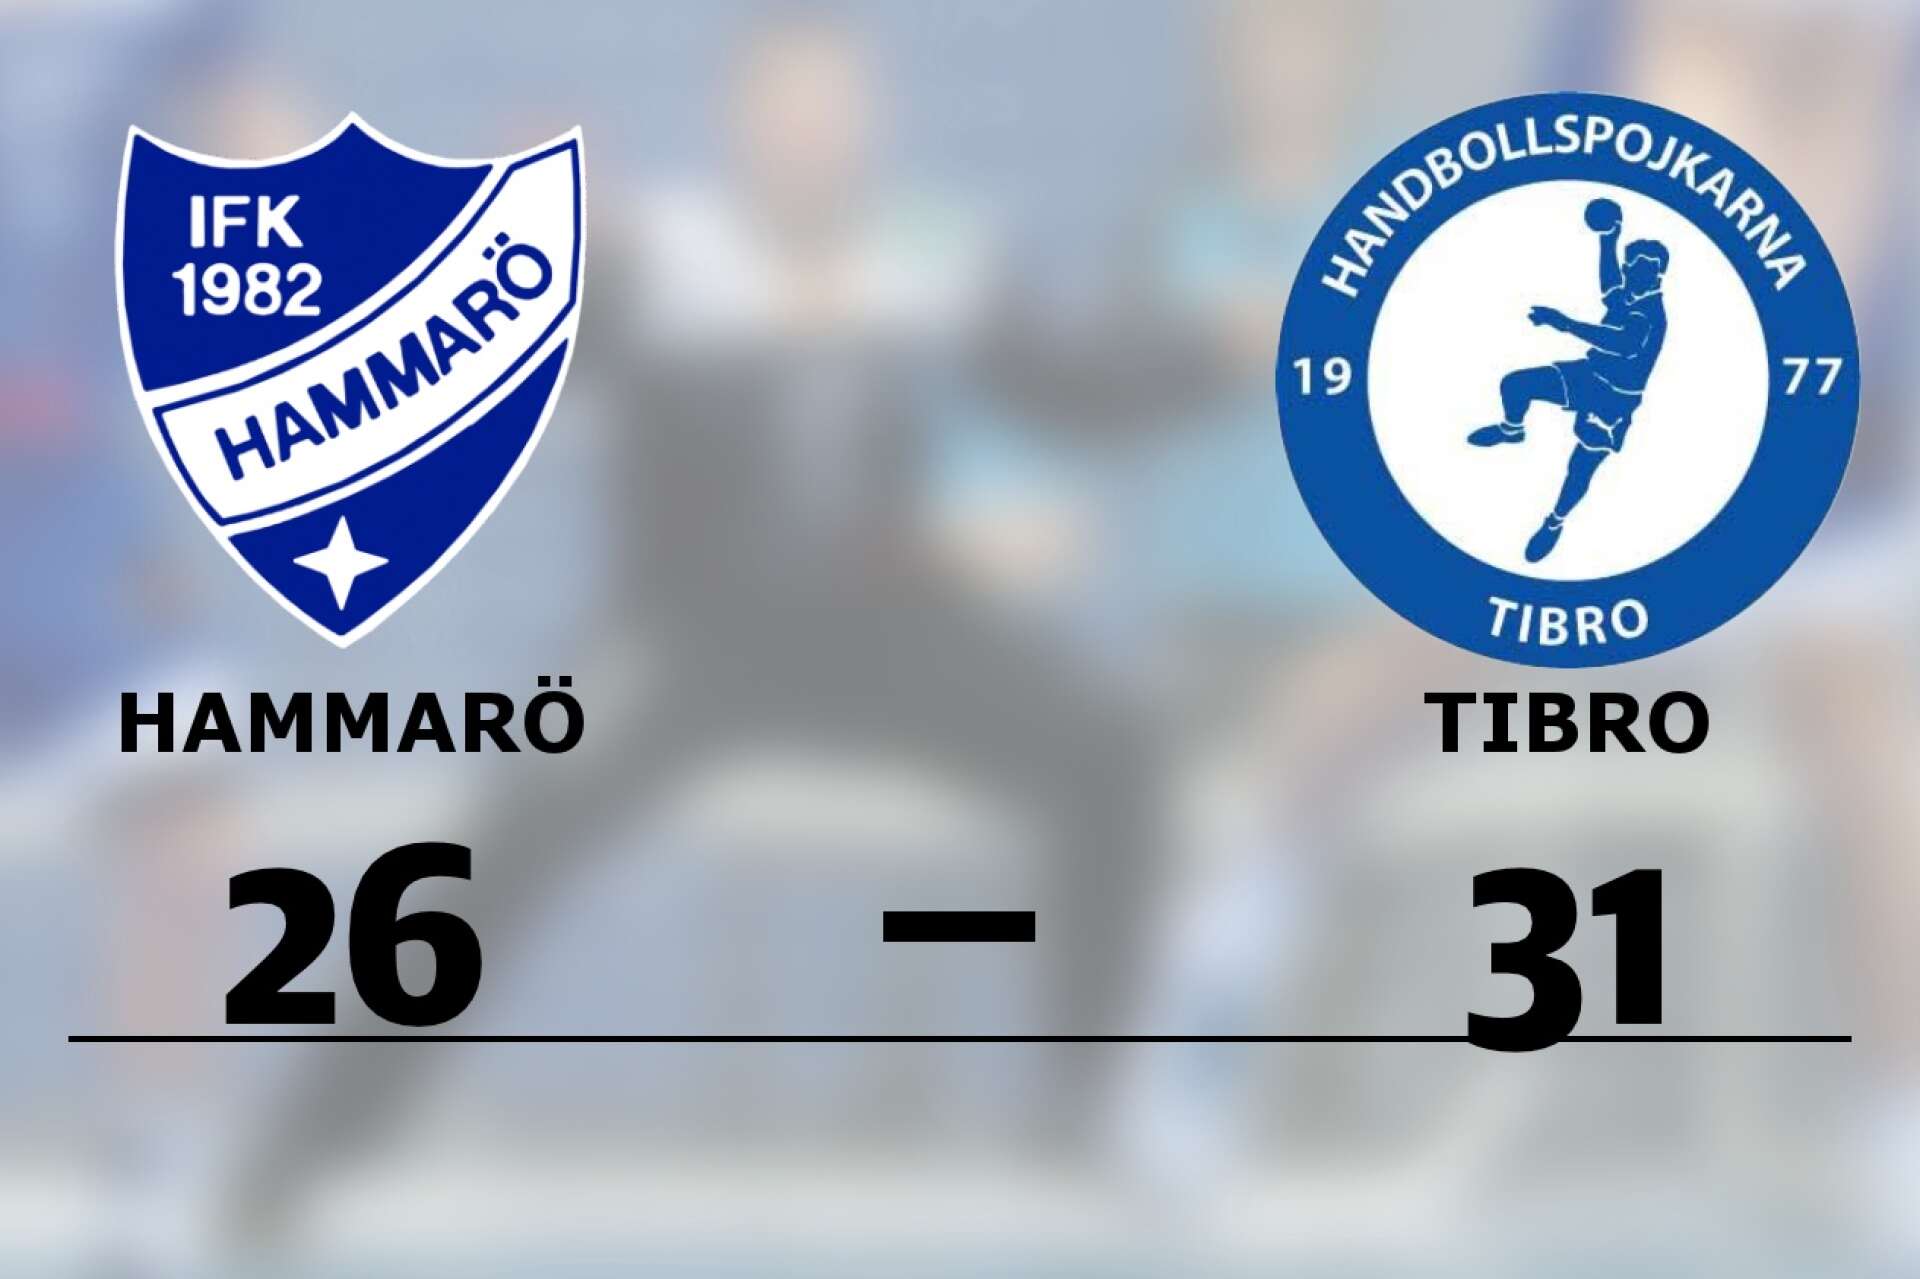 IFK Hammarö förlorade mot HP Tibro